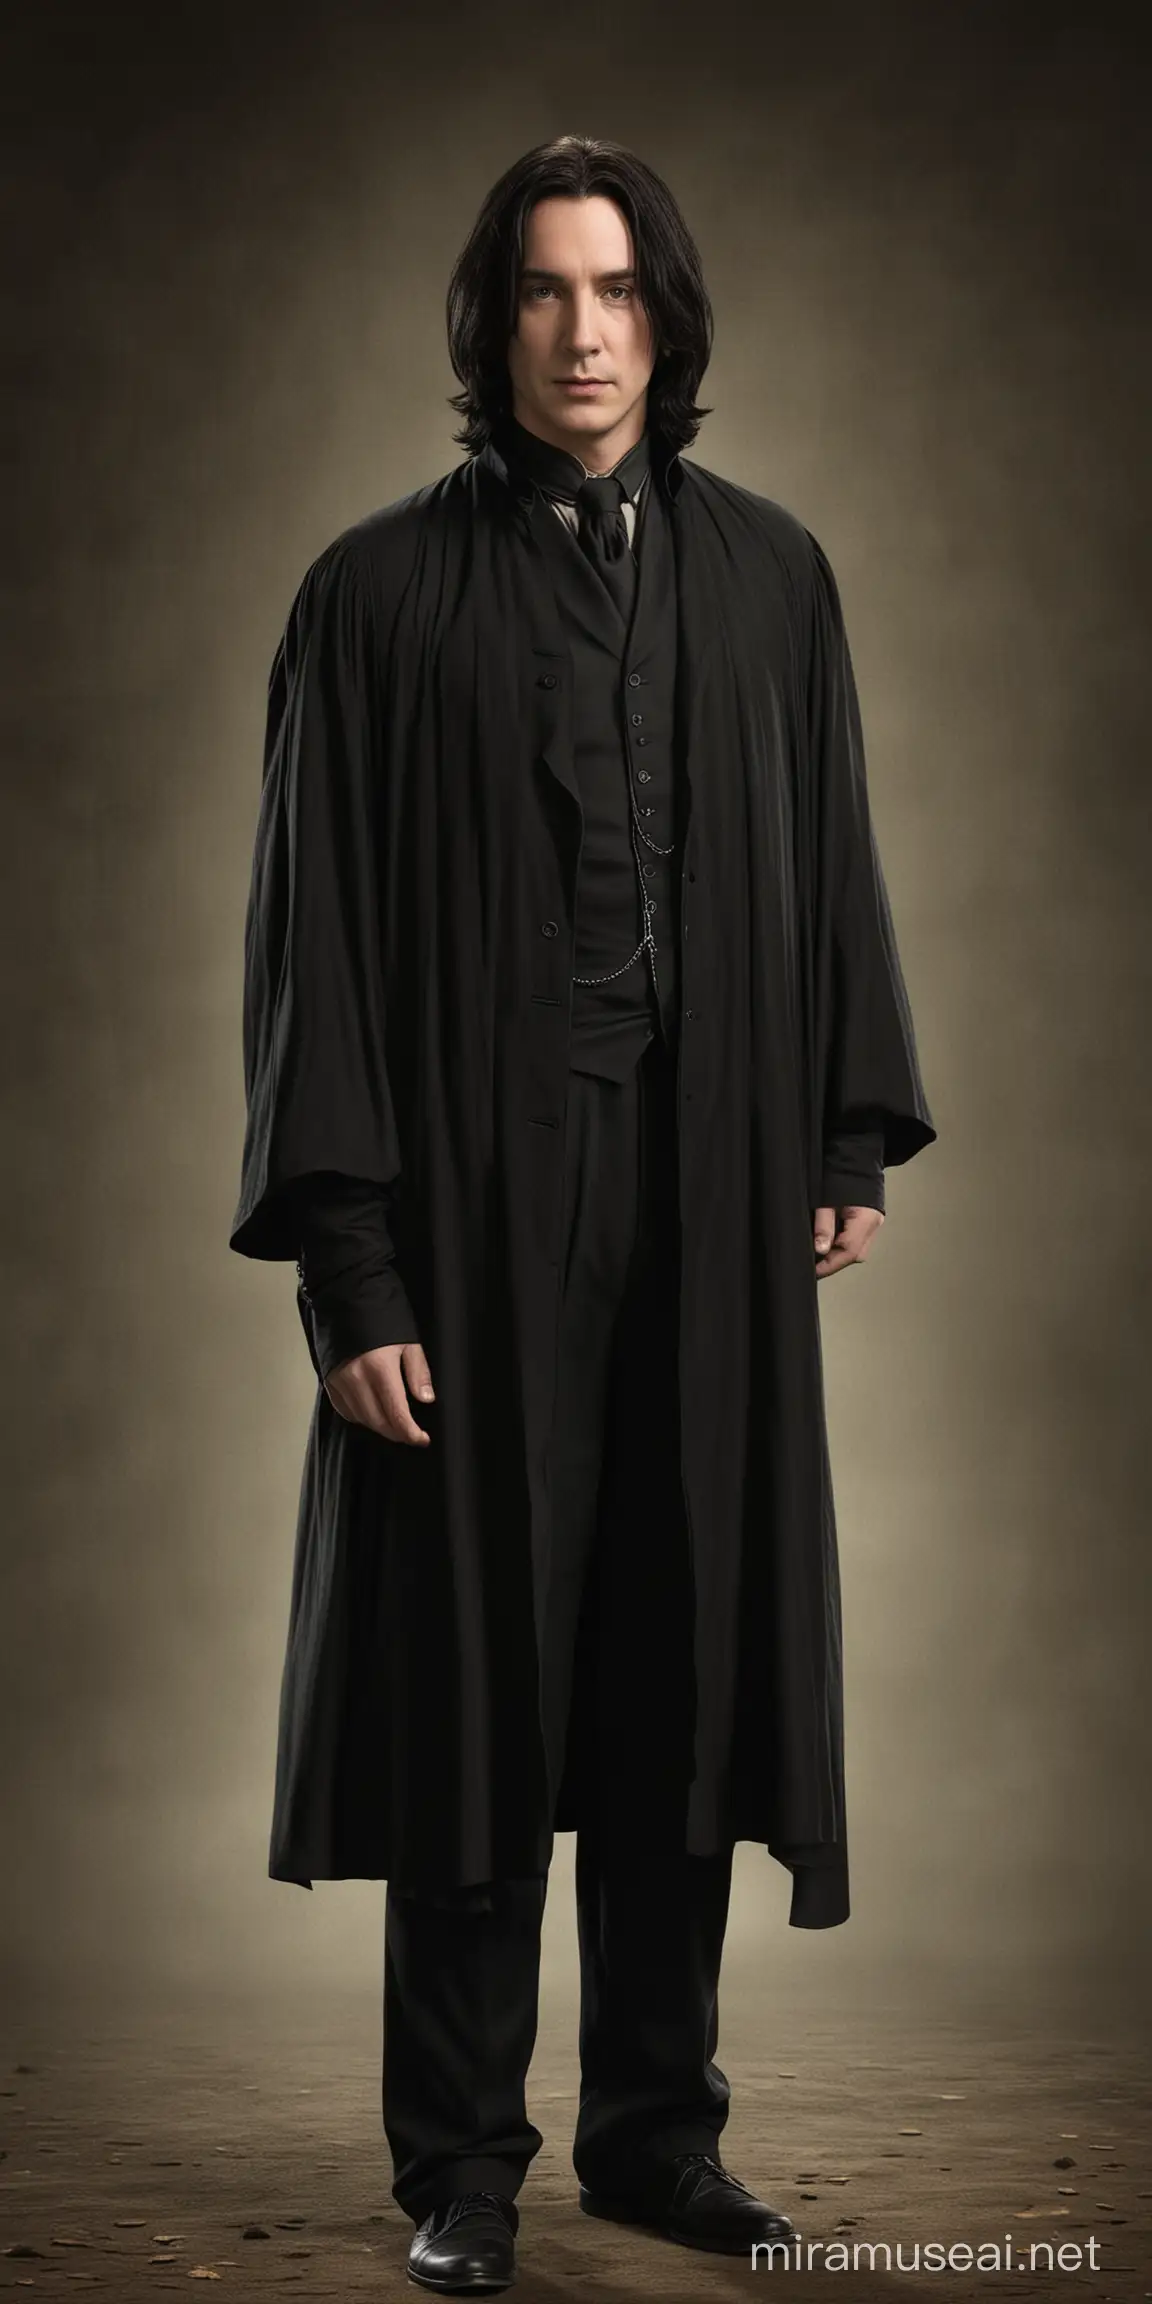 Young Handsome Severus Snape Portrait